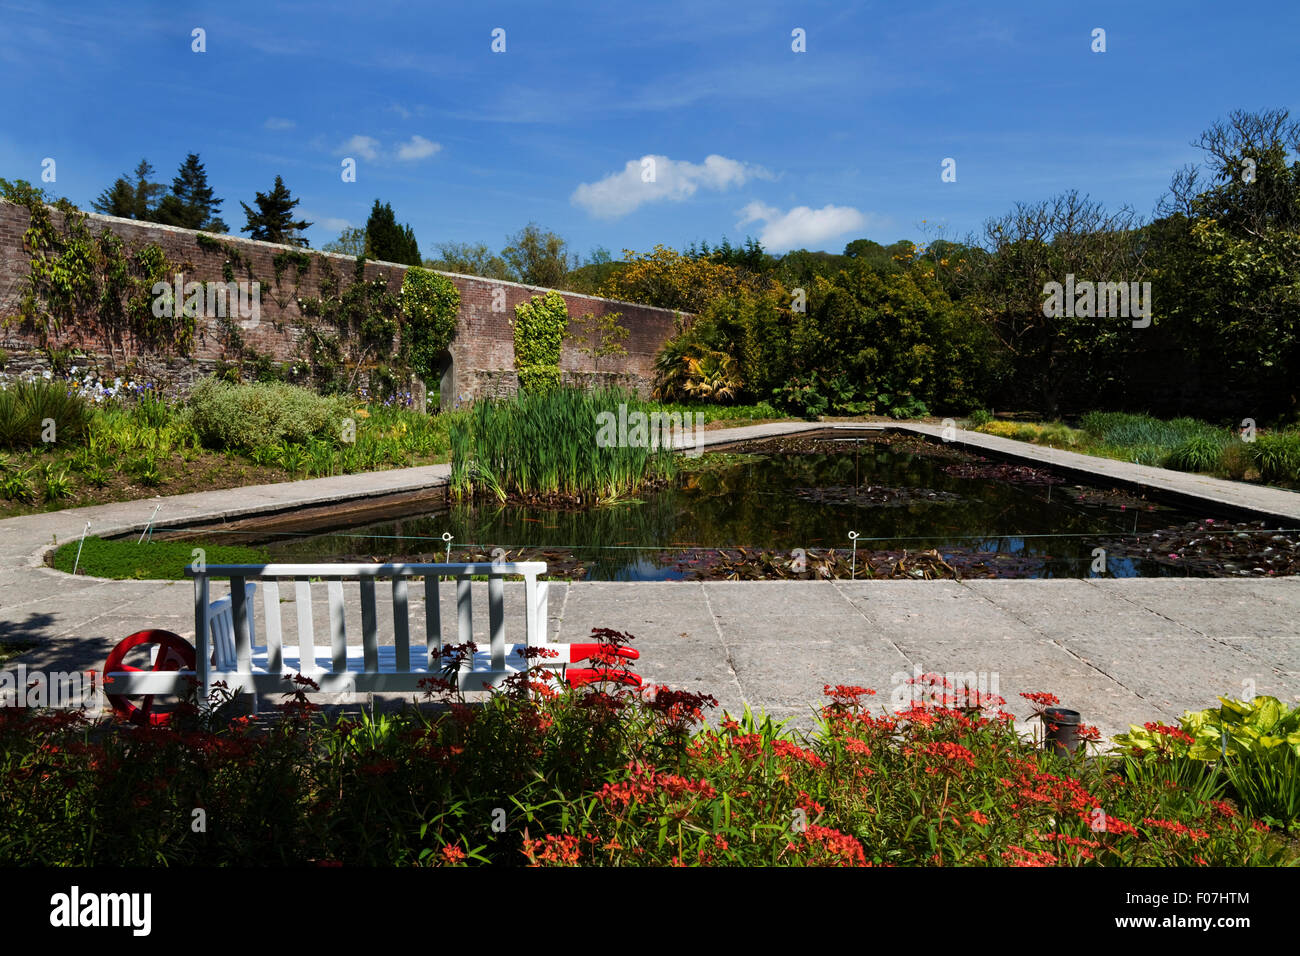 Il Giglio in piscina nel giardino murato, Mount Congreve giardini, vicino Kilmeaden, nella contea di Waterford, Irlanda Foto Stock